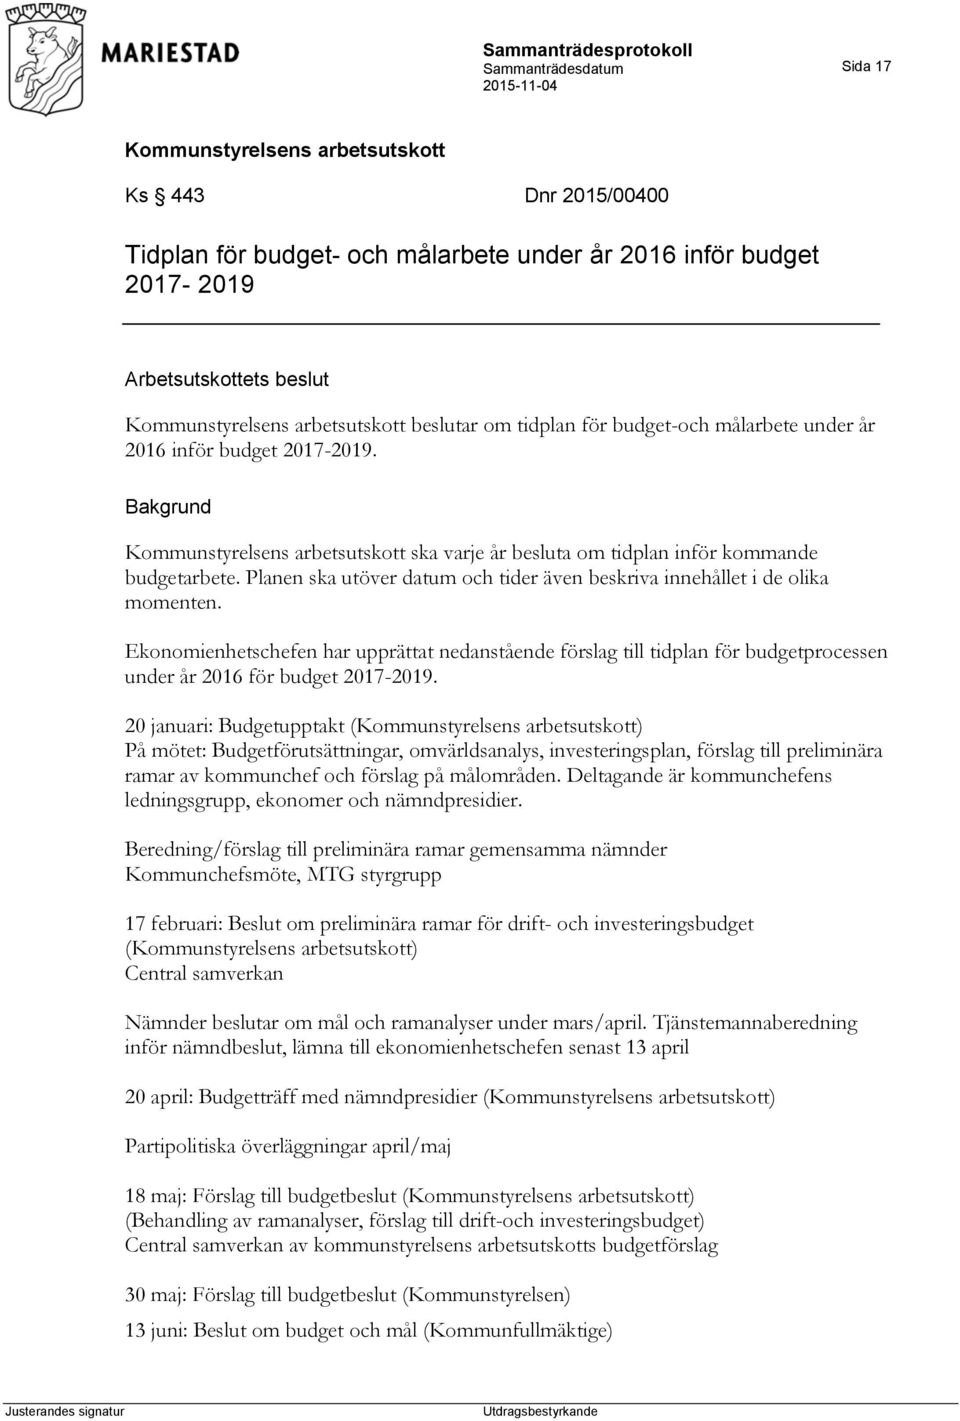 Ekonomienhetschefen har upprättat nedanstående förslag till tidplan för budgetprocessen under år 2016 för budget 2017-2019.